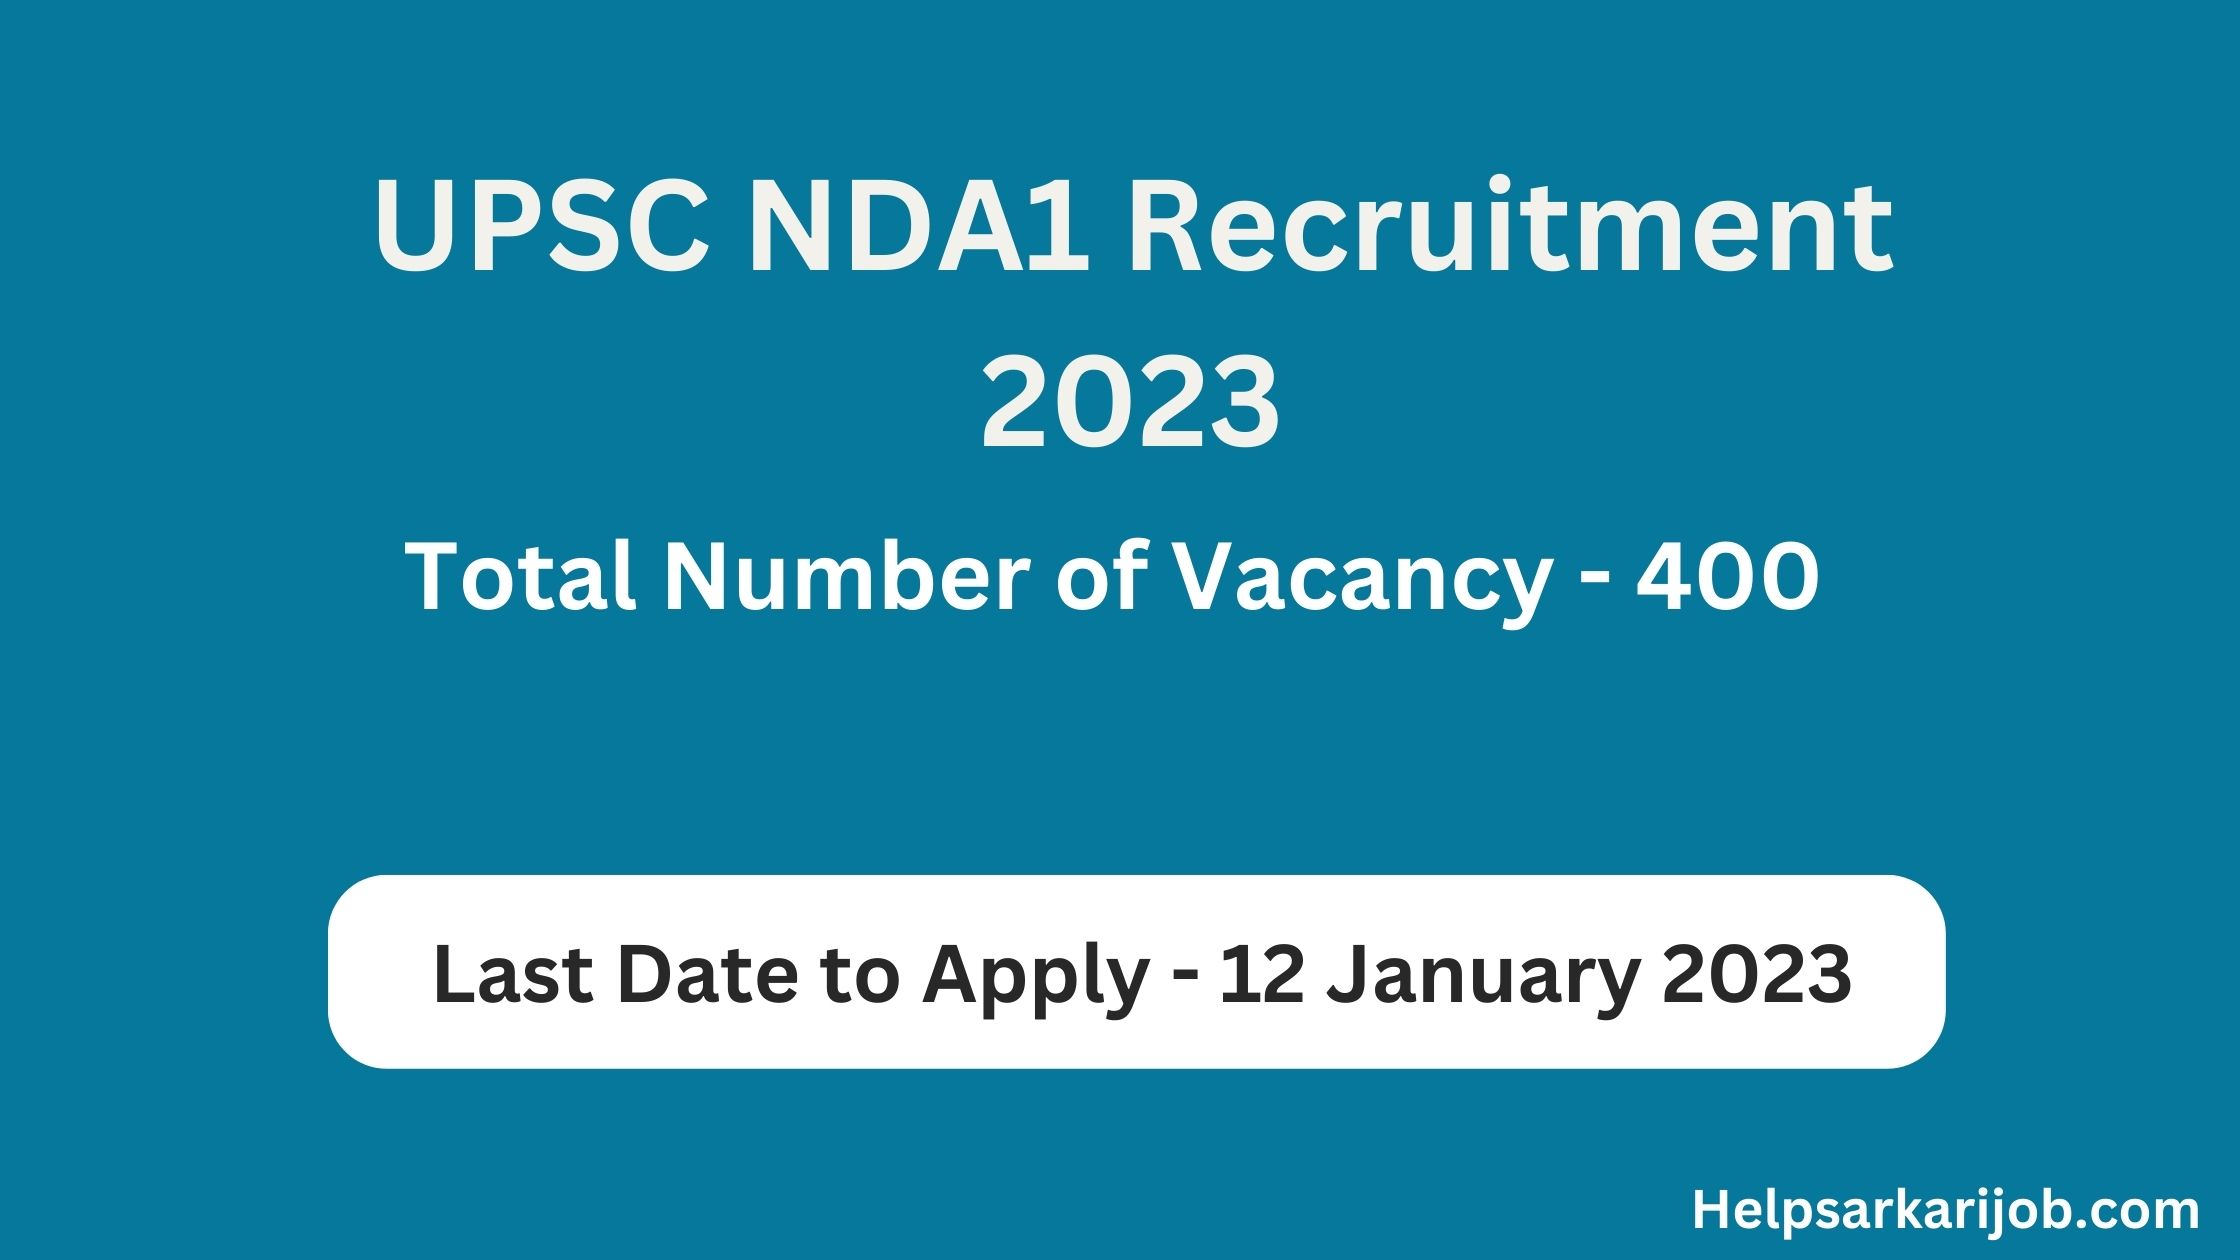 UPSC NDA1 Recruitment 2023